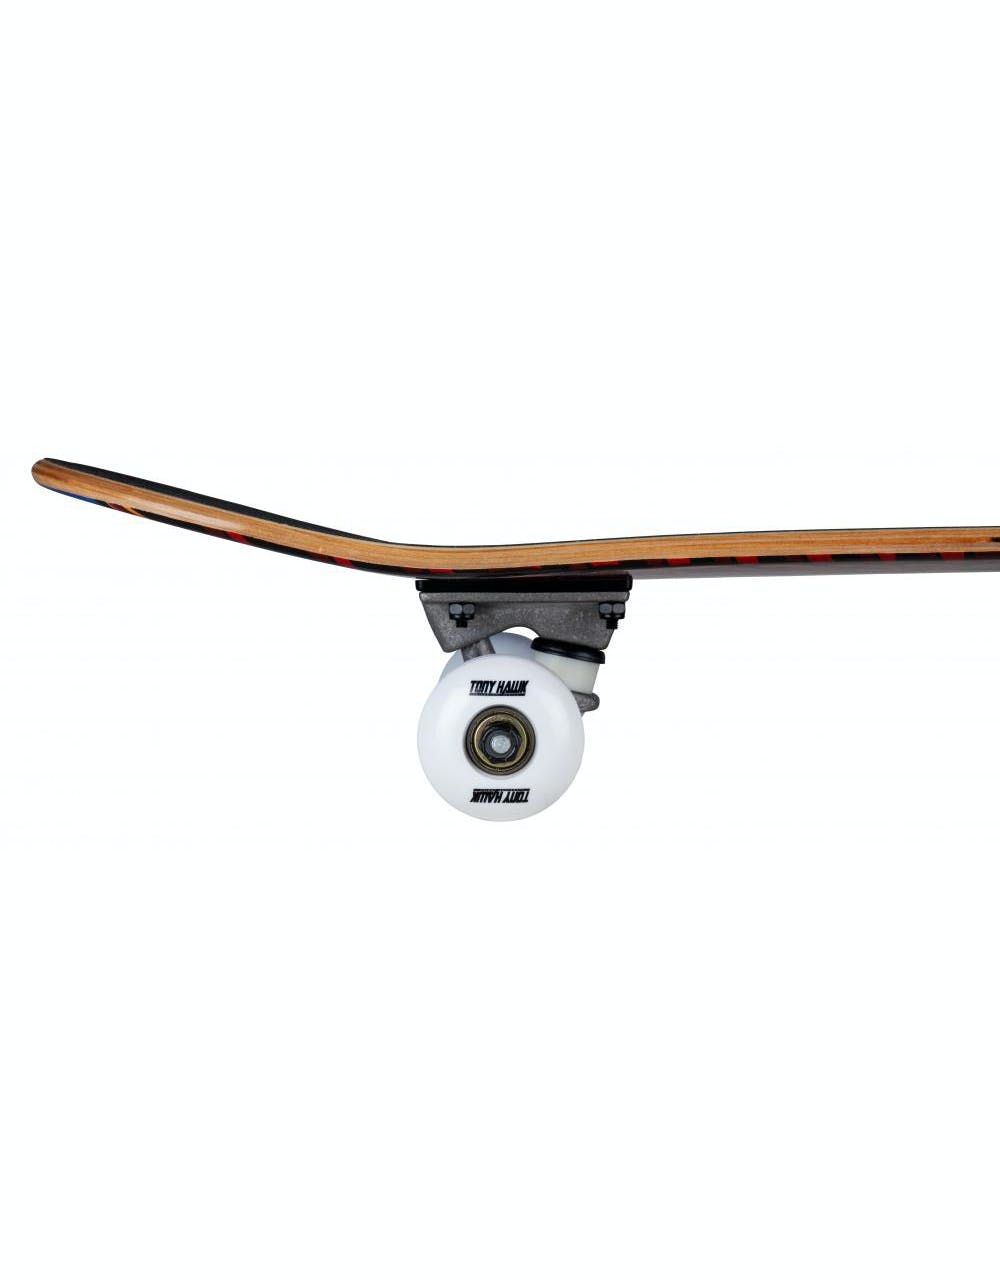 Tony Hawk 180 King Hawk Mini Complete Skateboard - 7.375"